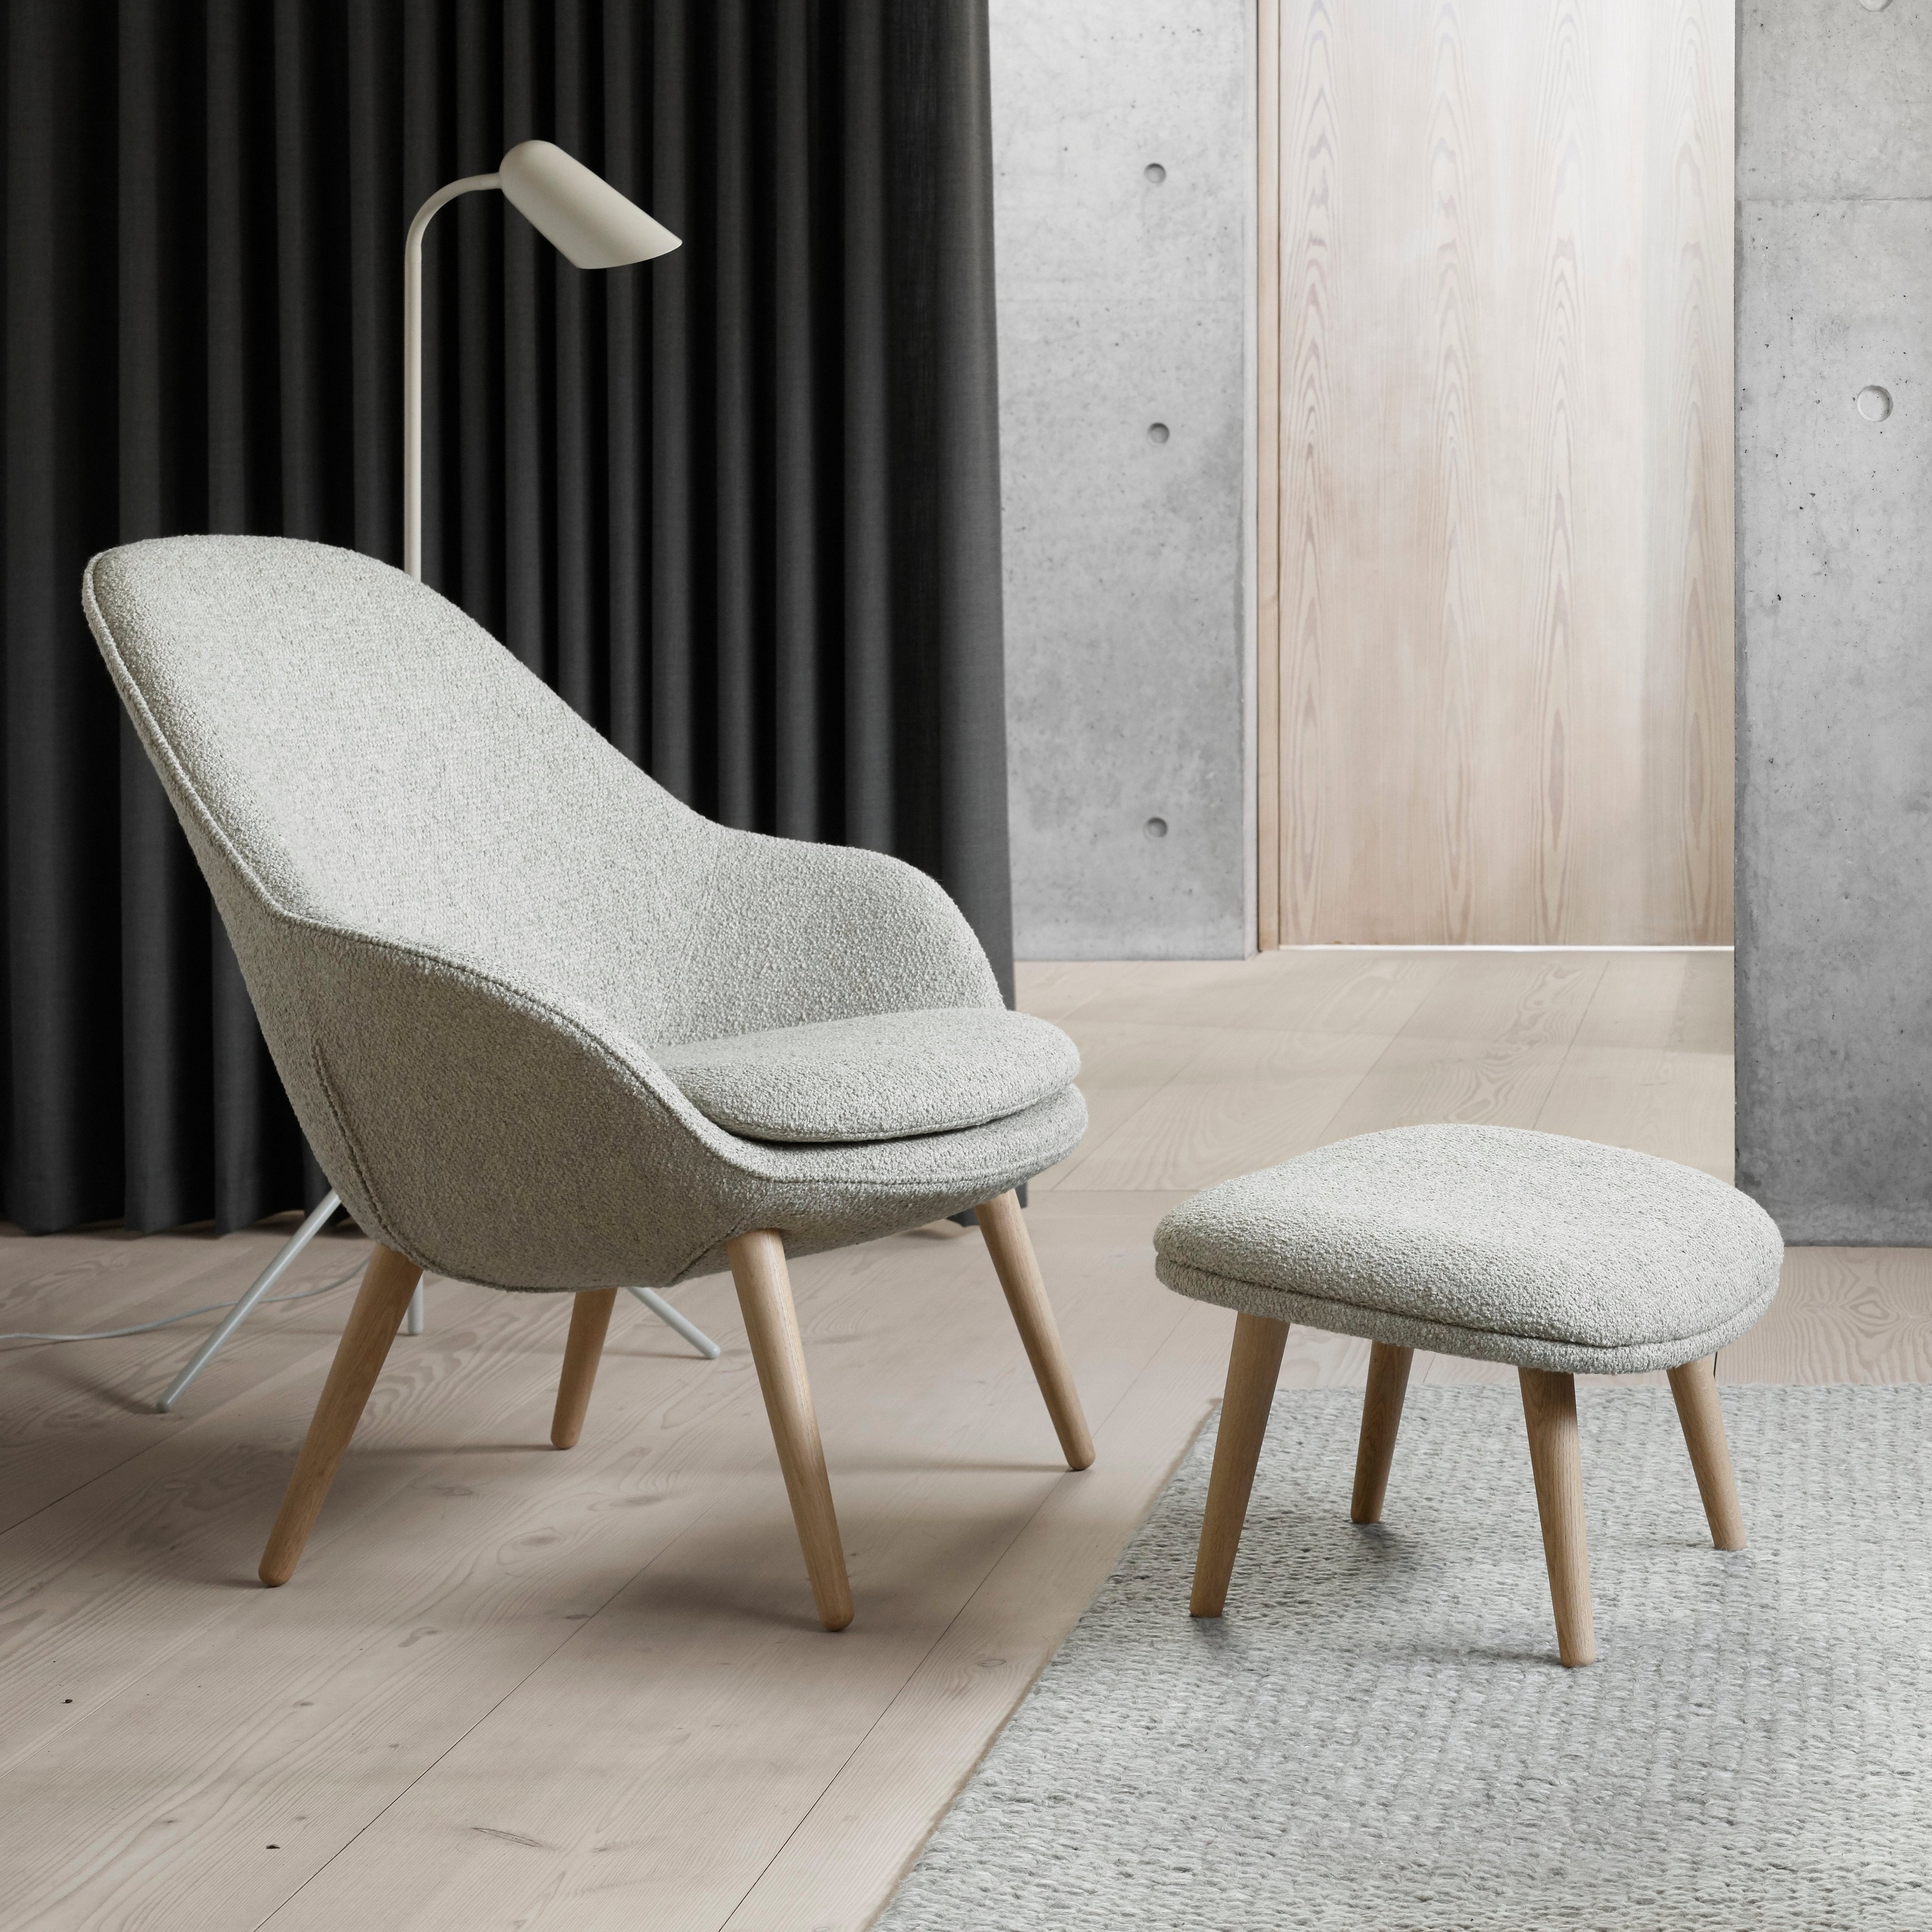 現代椅子搭配同款腳凳、落地燈、深色窗簾和混凝土裝飾。